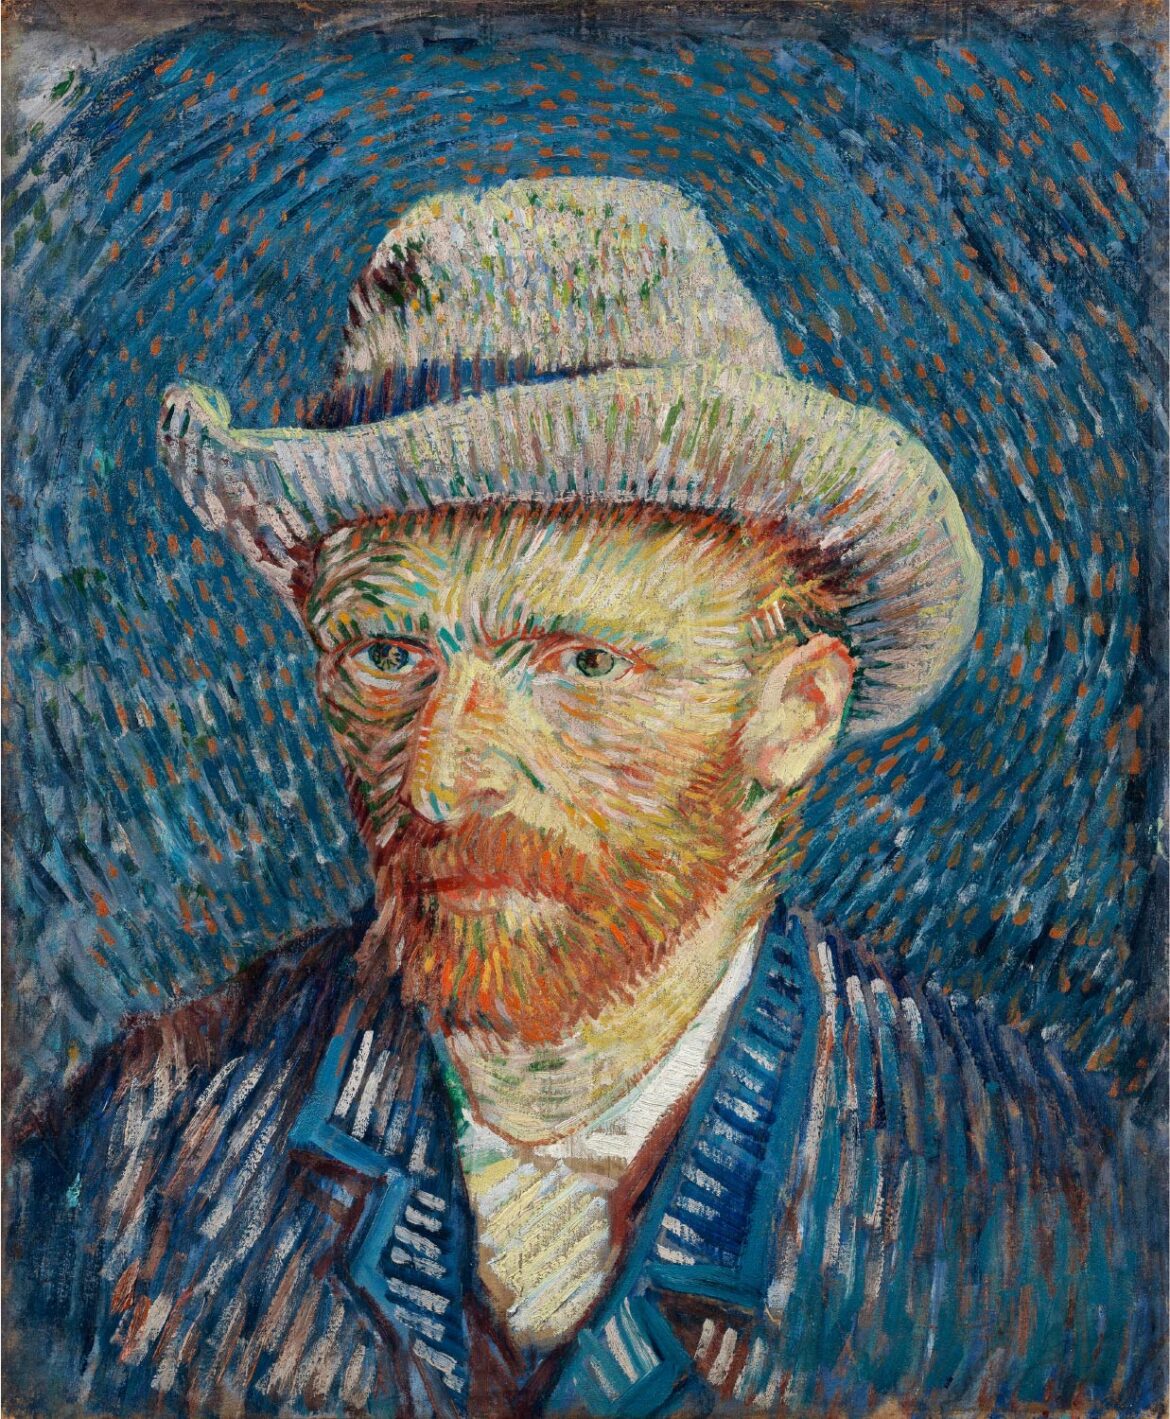 【無料壁紙】フィンセント・ファン・ゴッホ「自画像-灰色のフェルト帽をかぶったもの (1887)」 / Vincent van Gogh_Self-Portrait with Grey Felt Hat (1887)